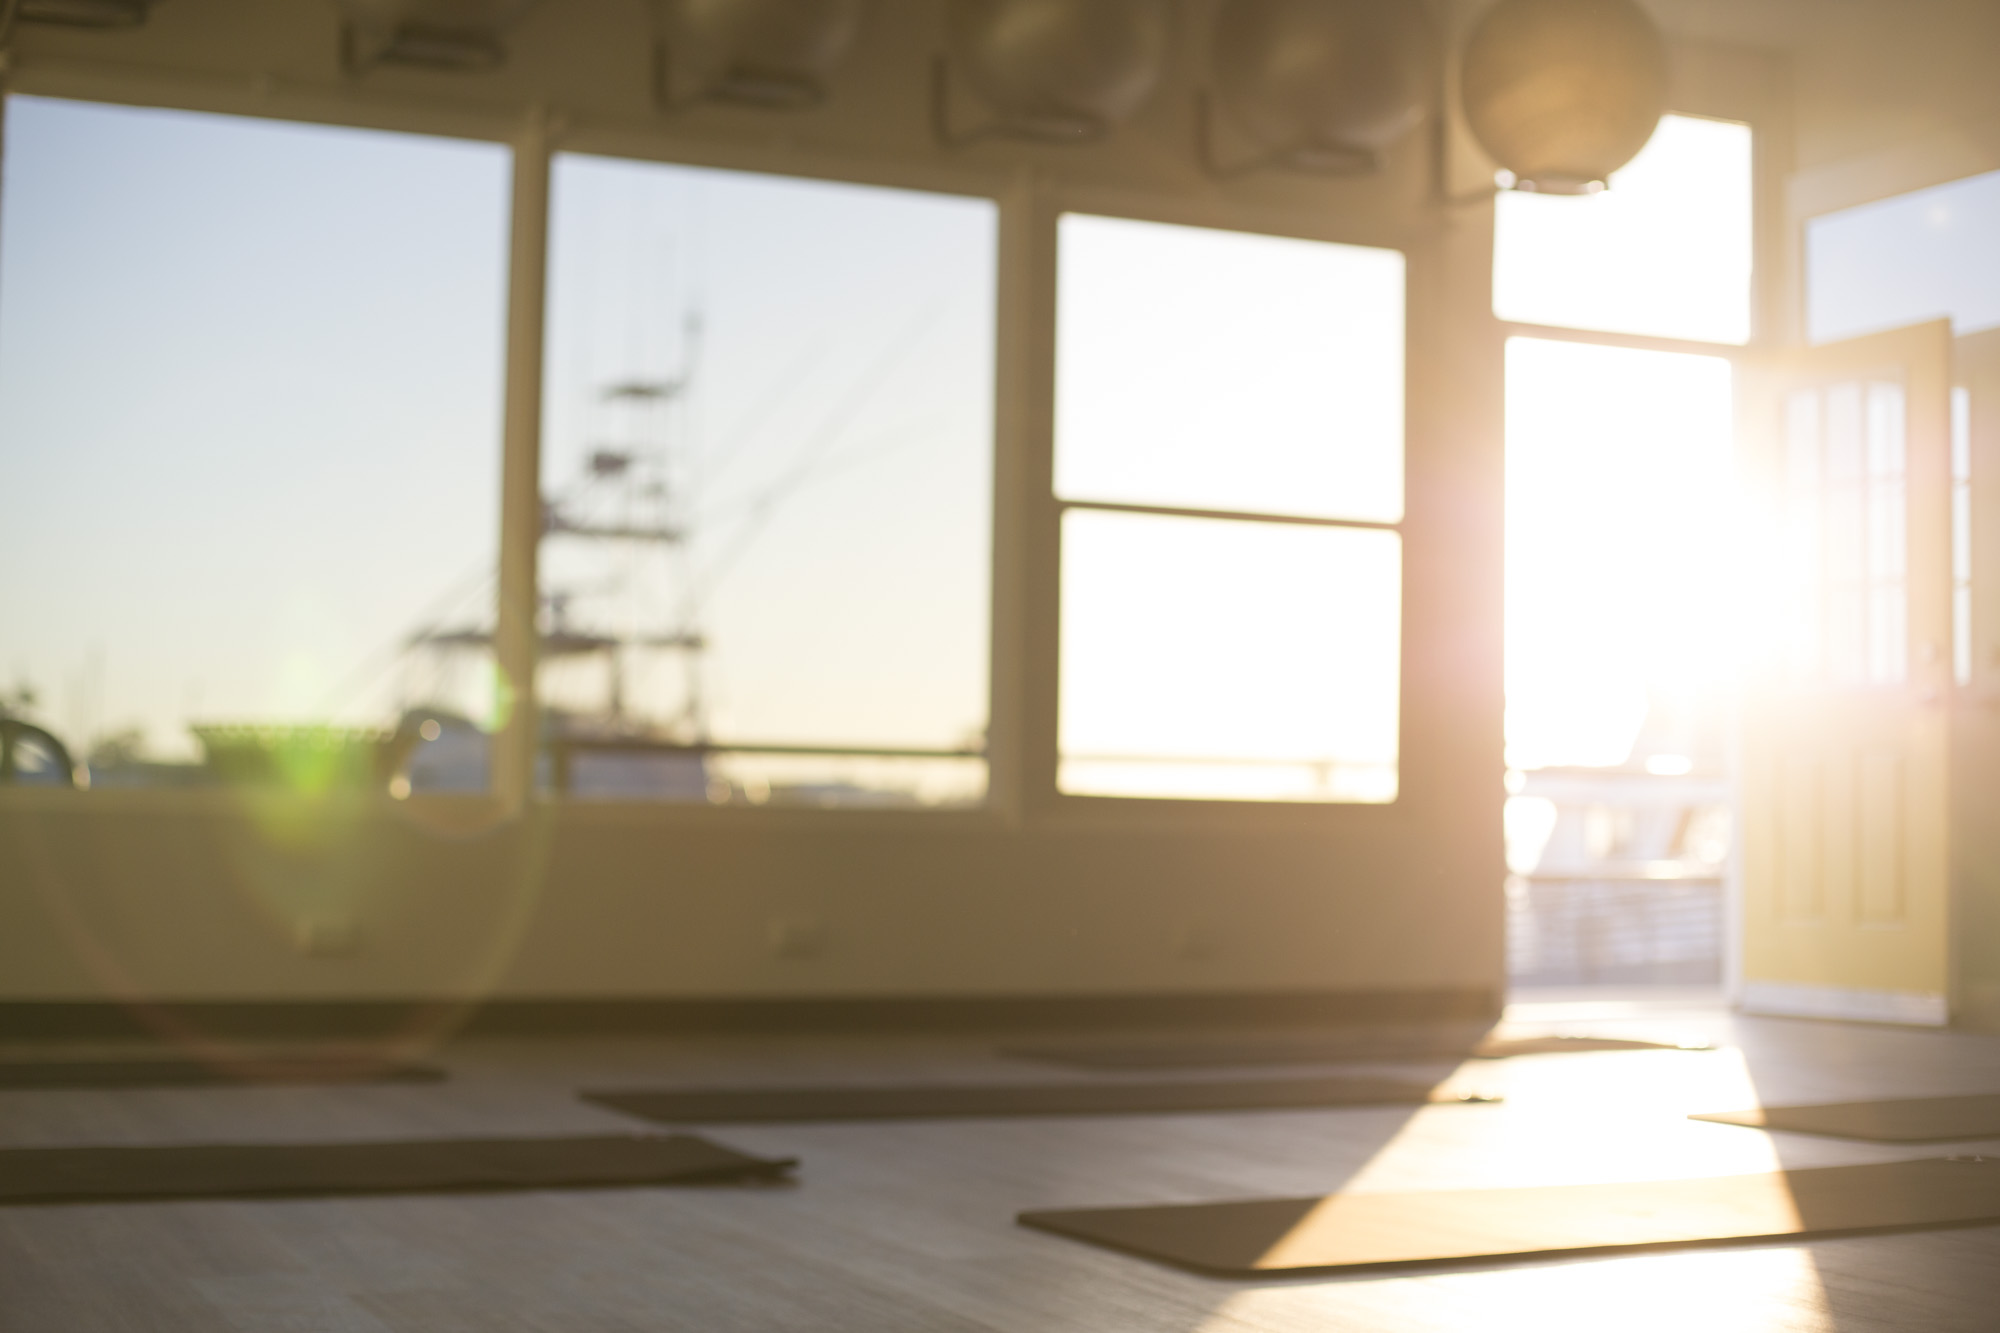 Long Beach pilates studio with open door marina view